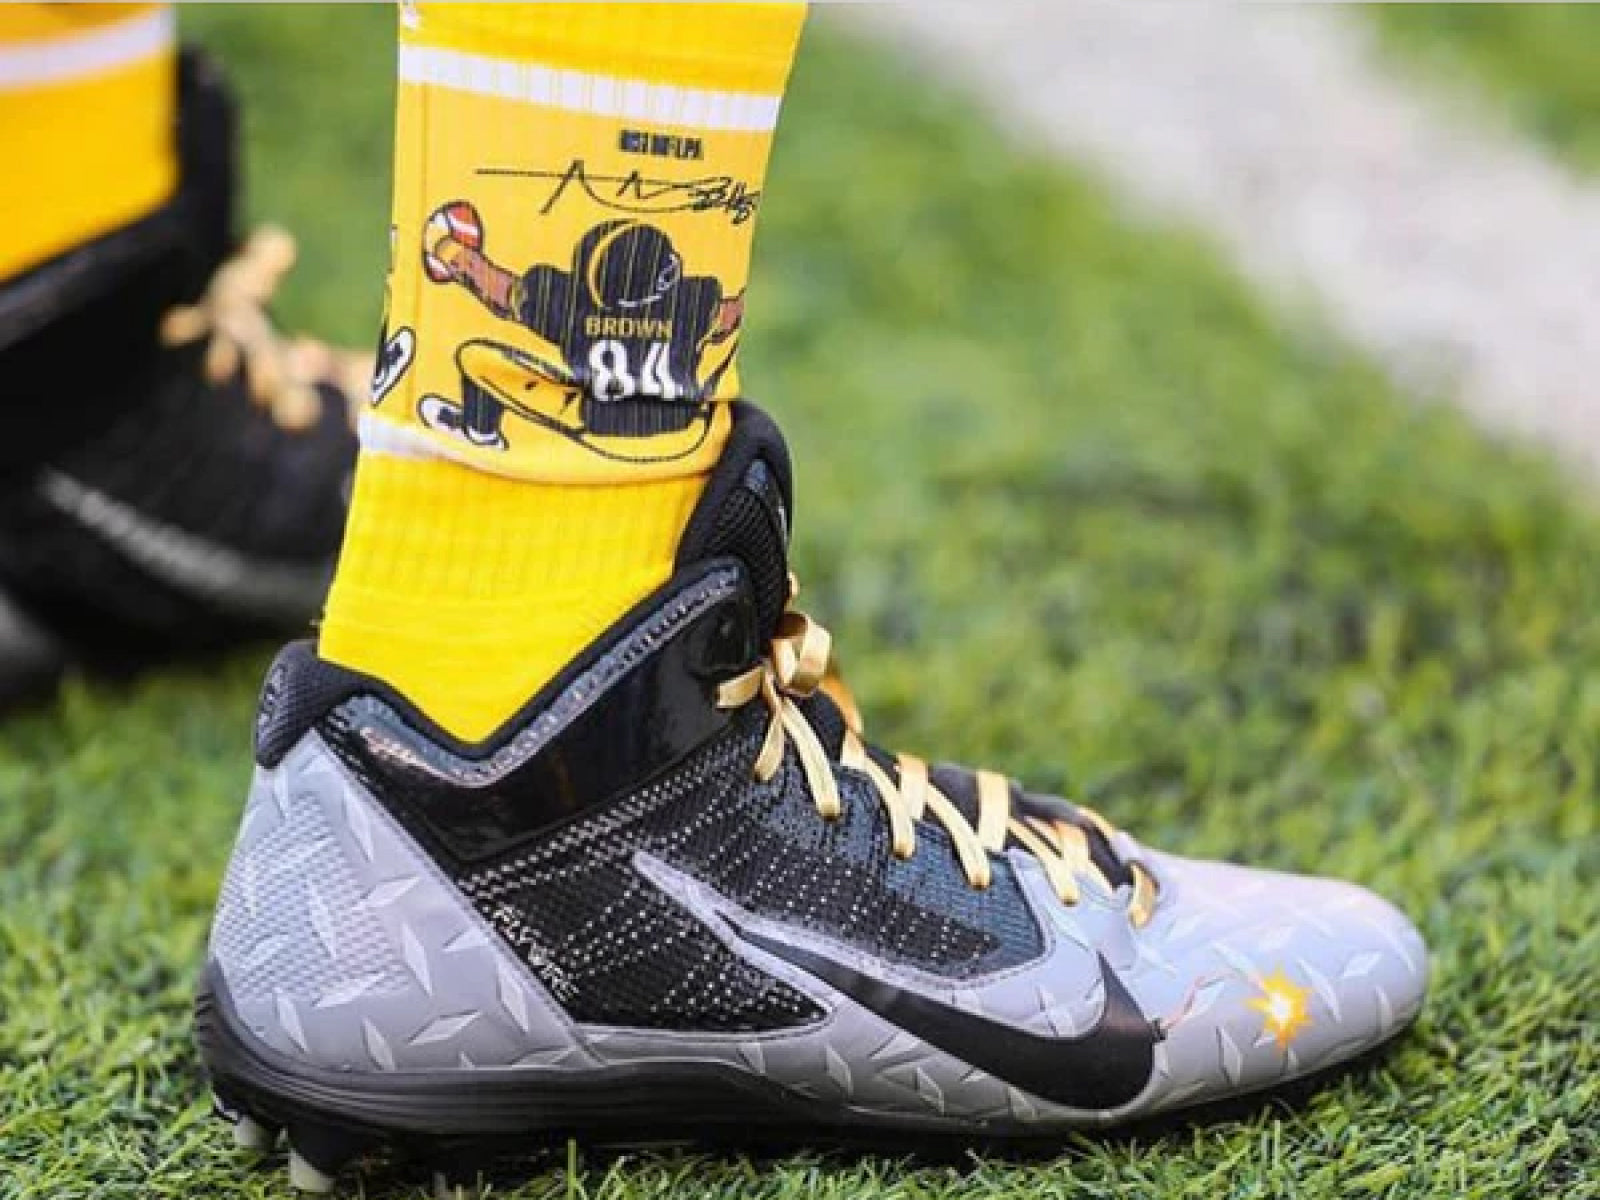 Antonio Brown wears Strideline Socks during Giants/Steelers Game